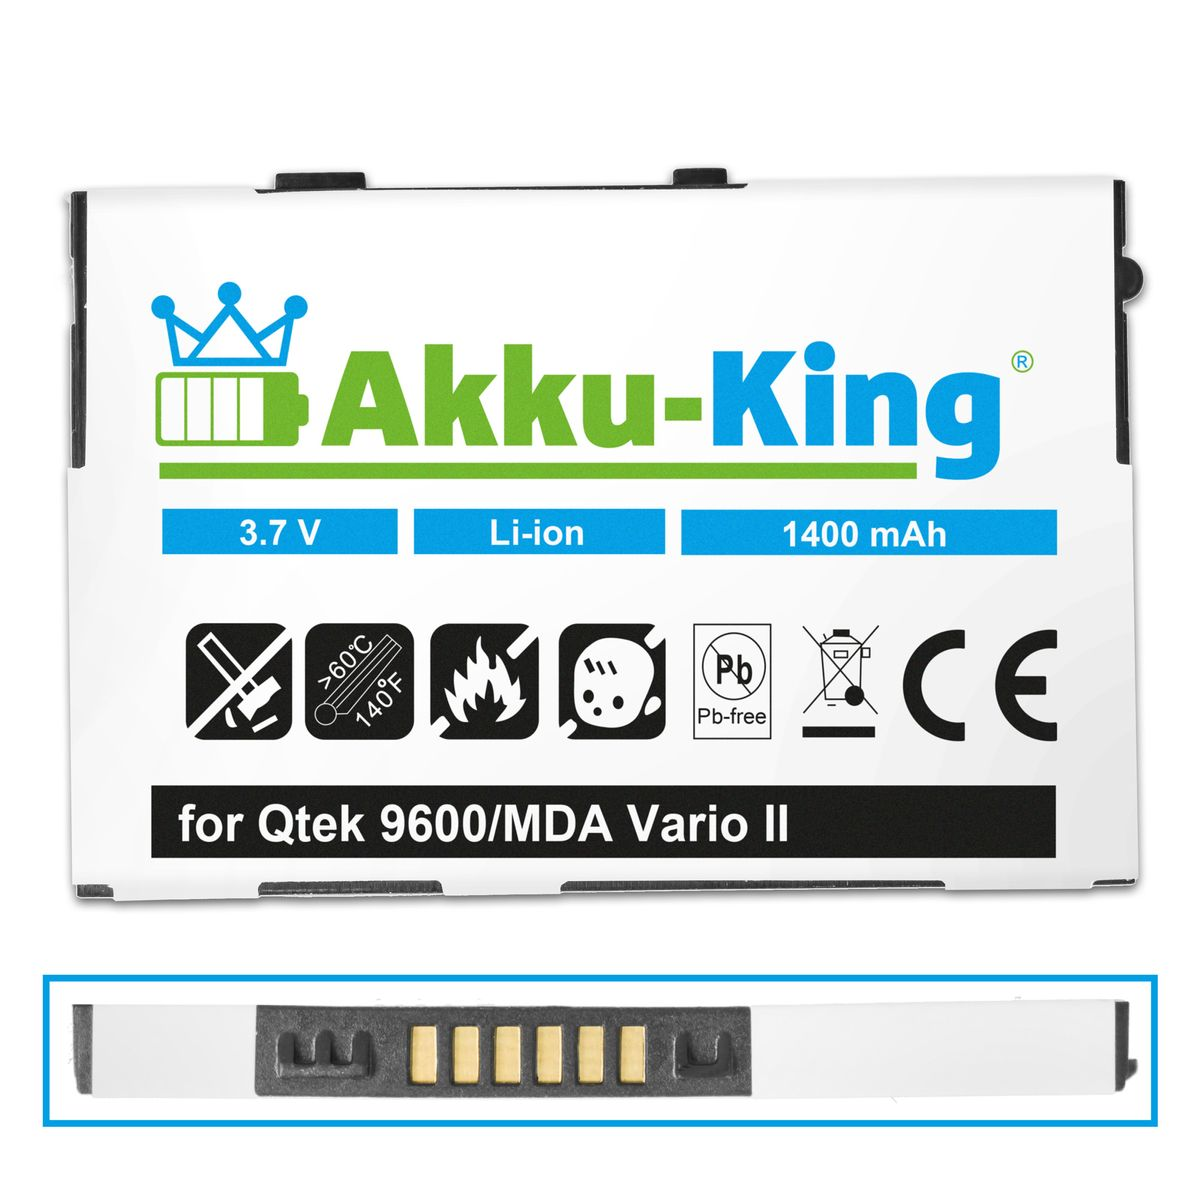 Handy-Akku, 3.7 HTABB1 1400mAh Volt, Akku Li-Ion kompatibel AKKU-KING mit Qtek